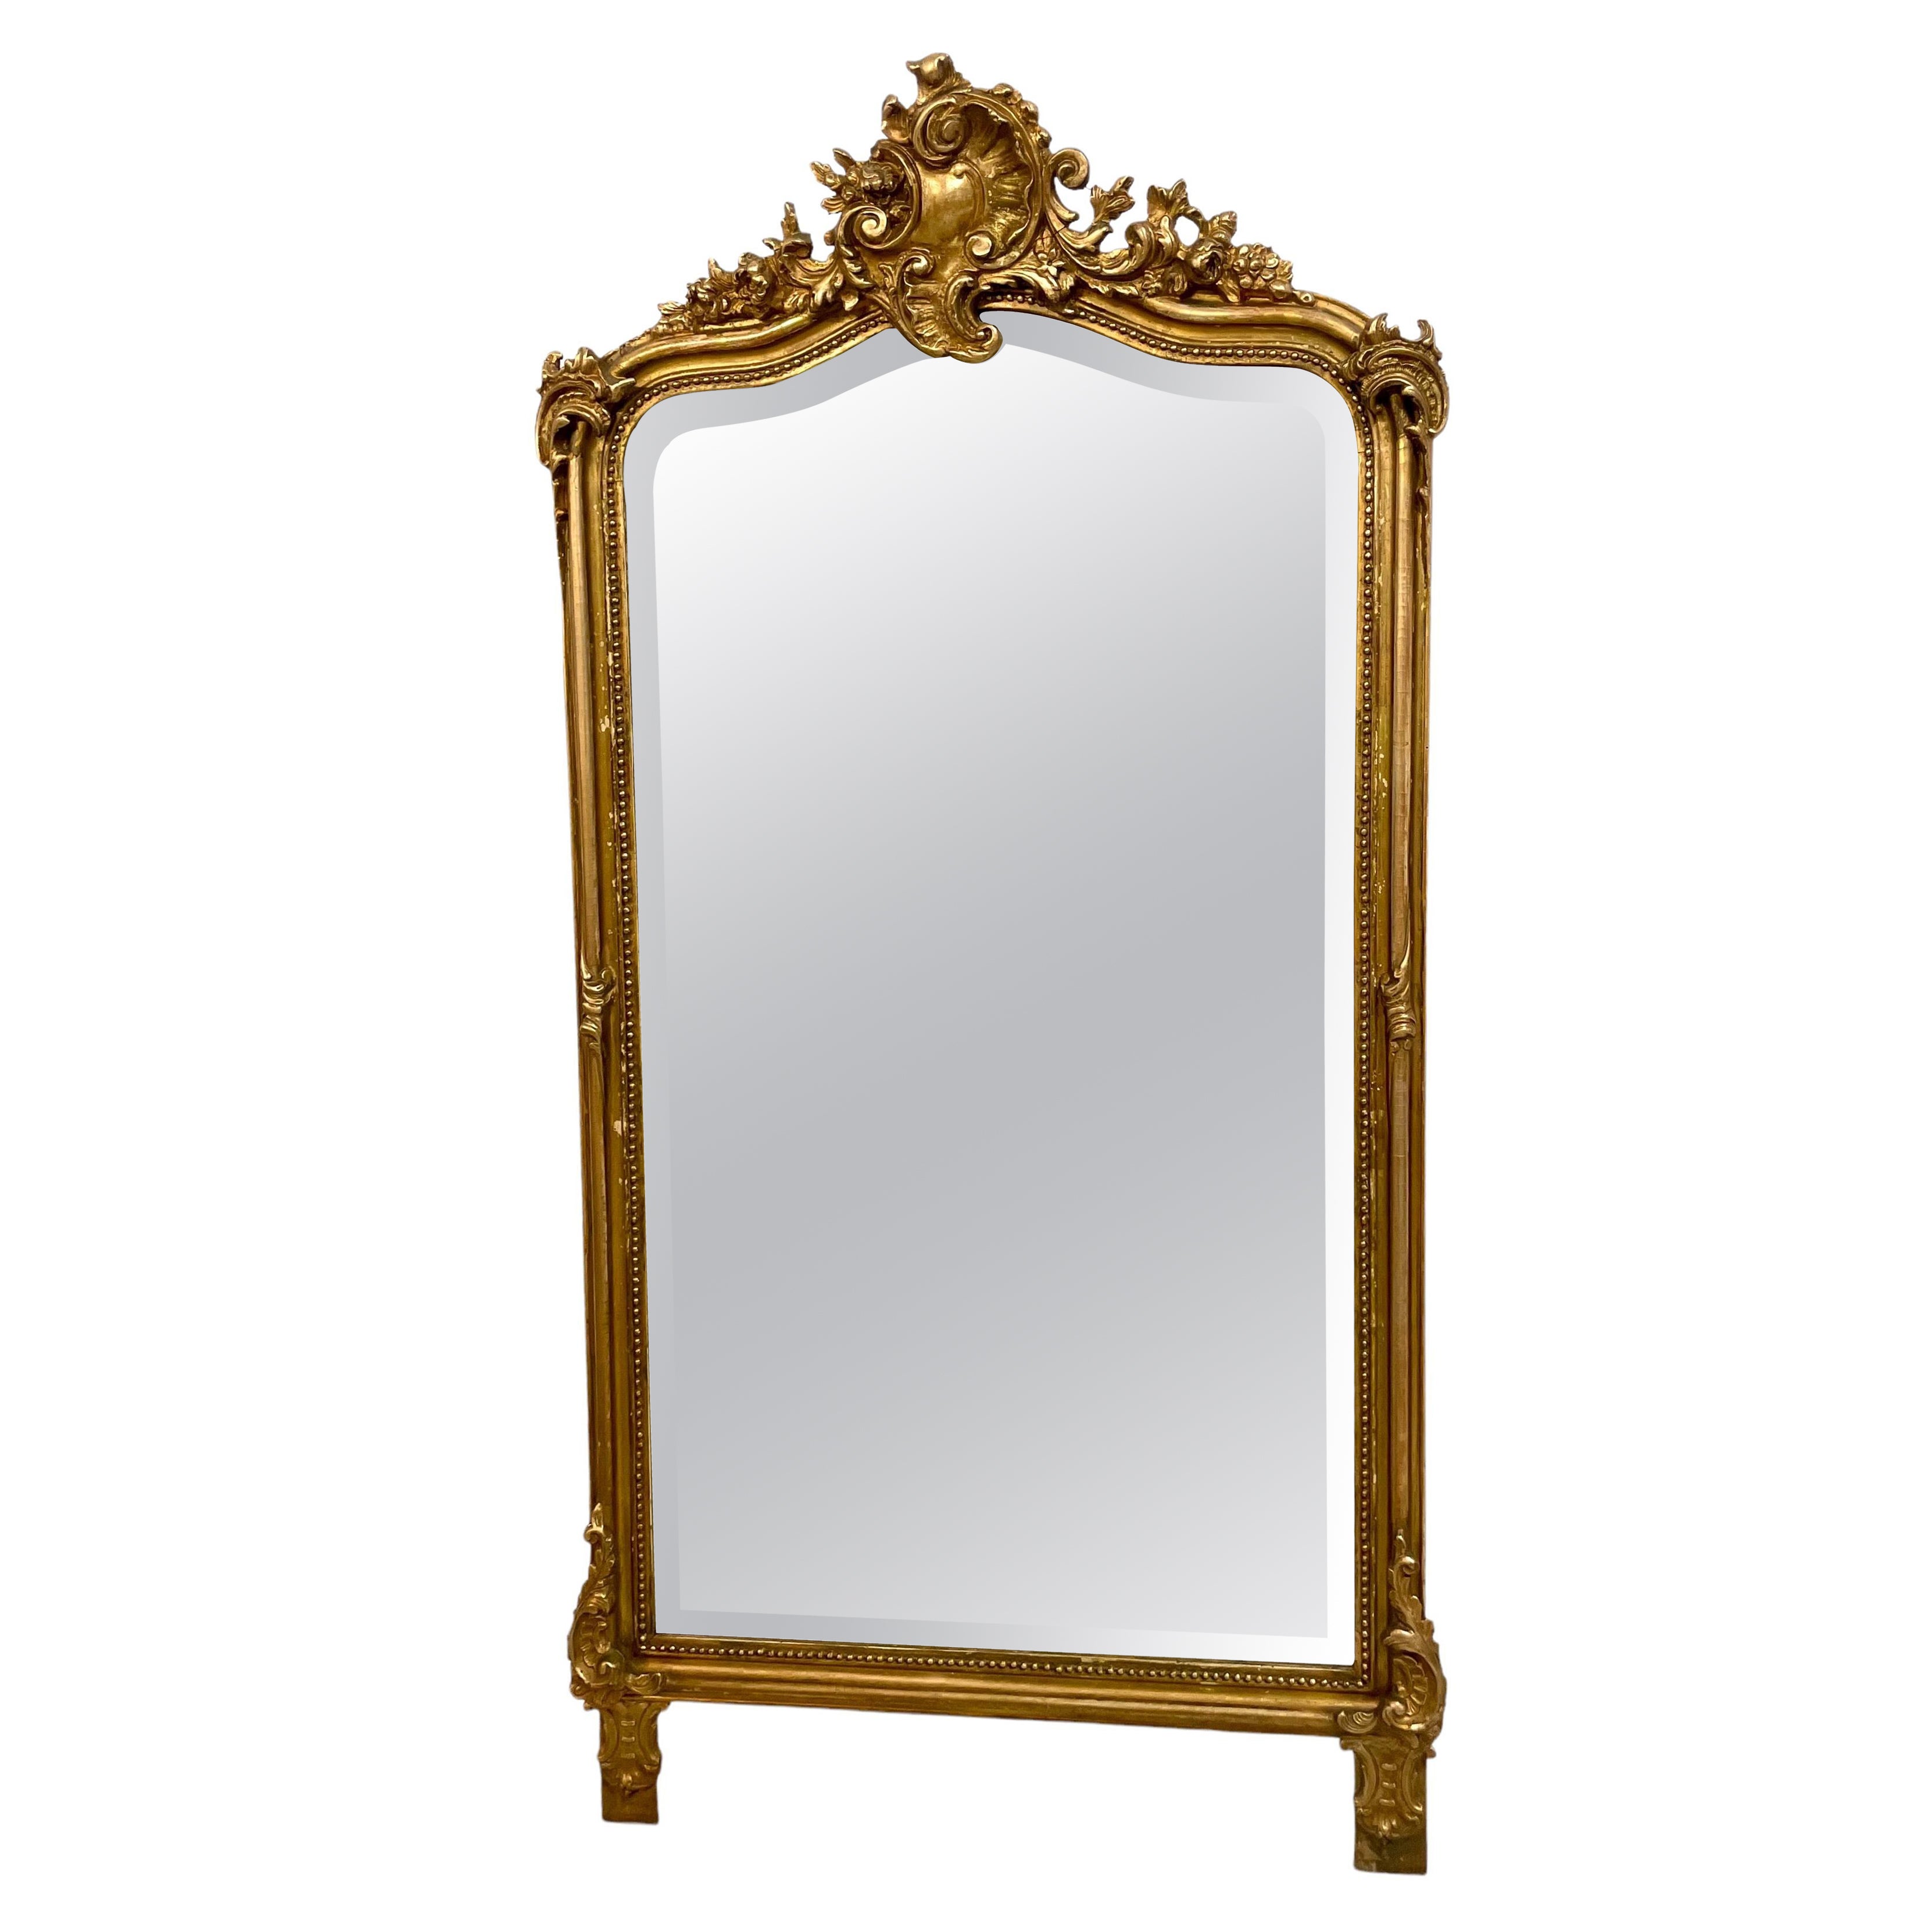 Miroir trumeau de style Louis XV doré avec plaque de verre biseauté